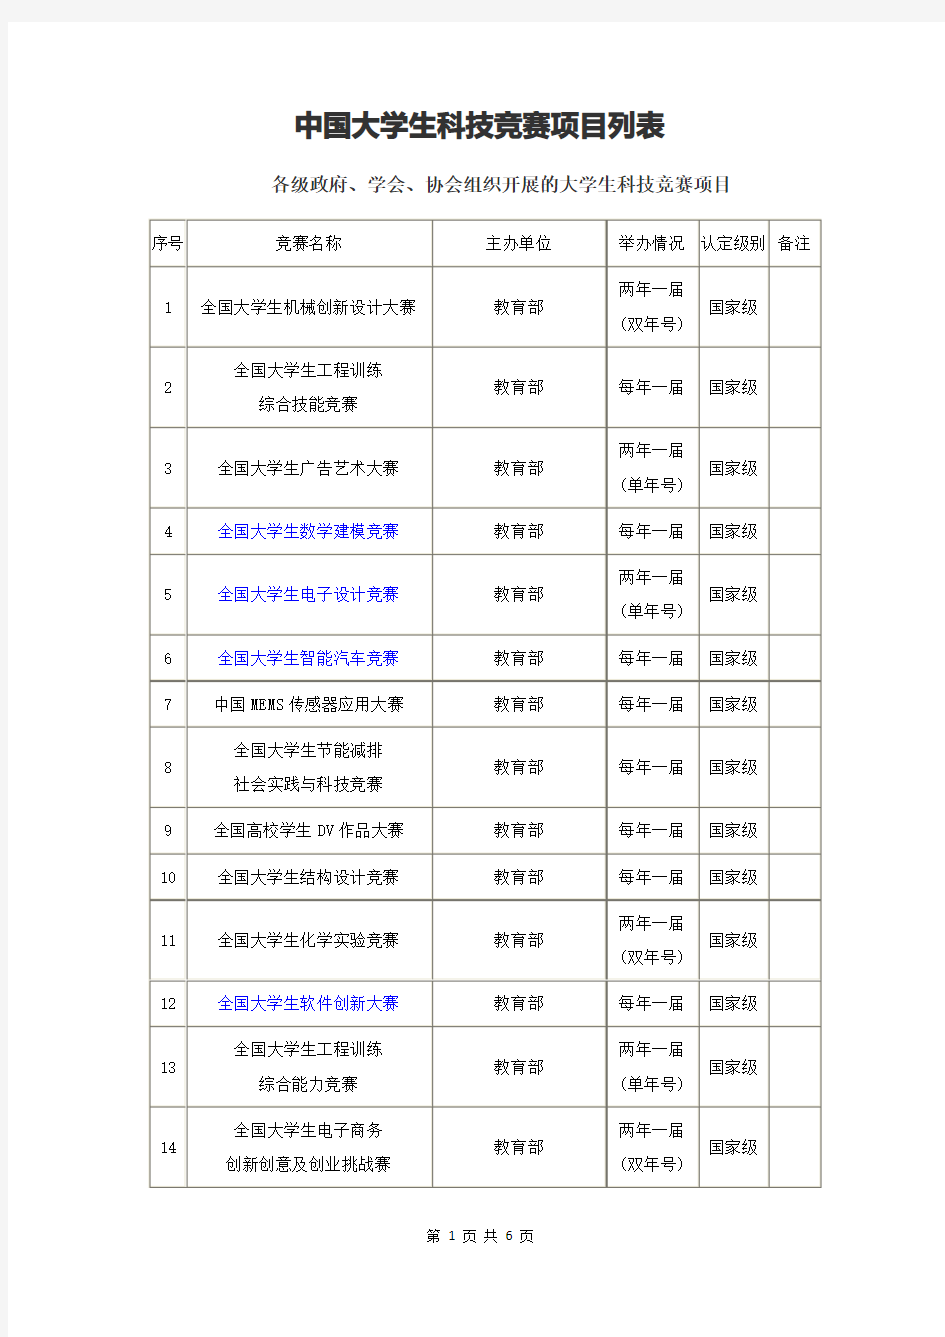 6、中国大学生科技竞赛项目列表